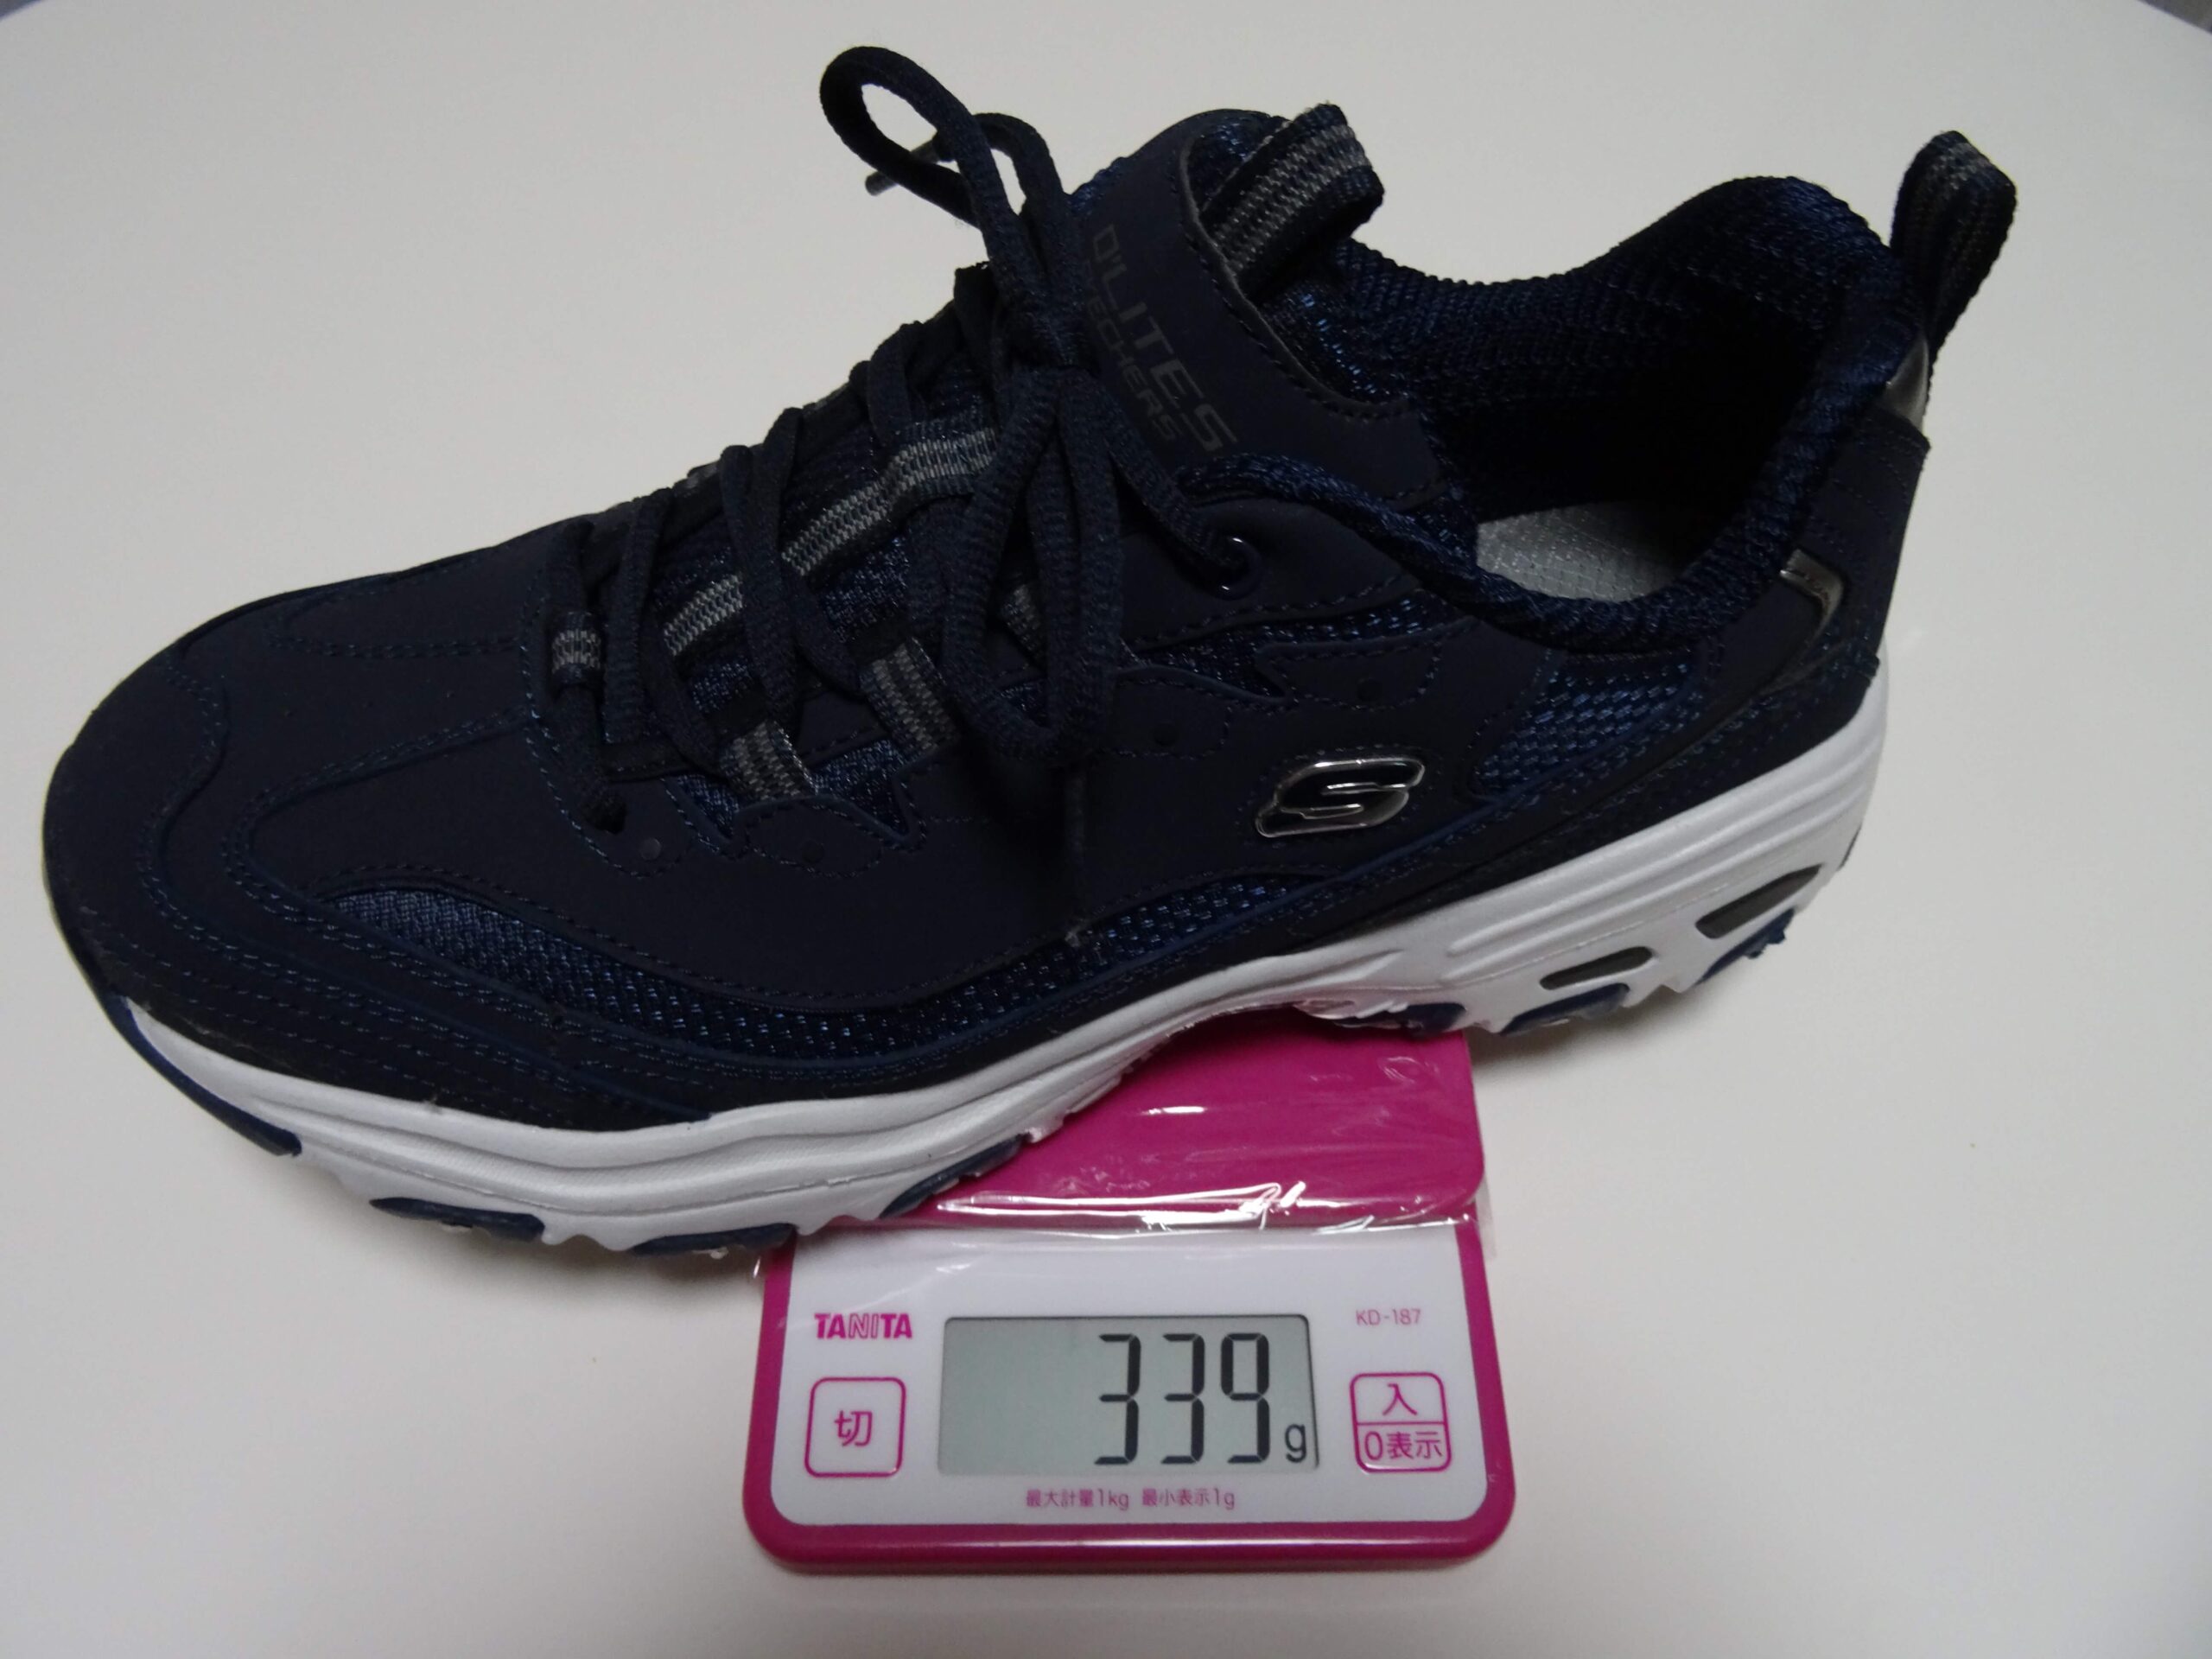 靴の質量（339g）